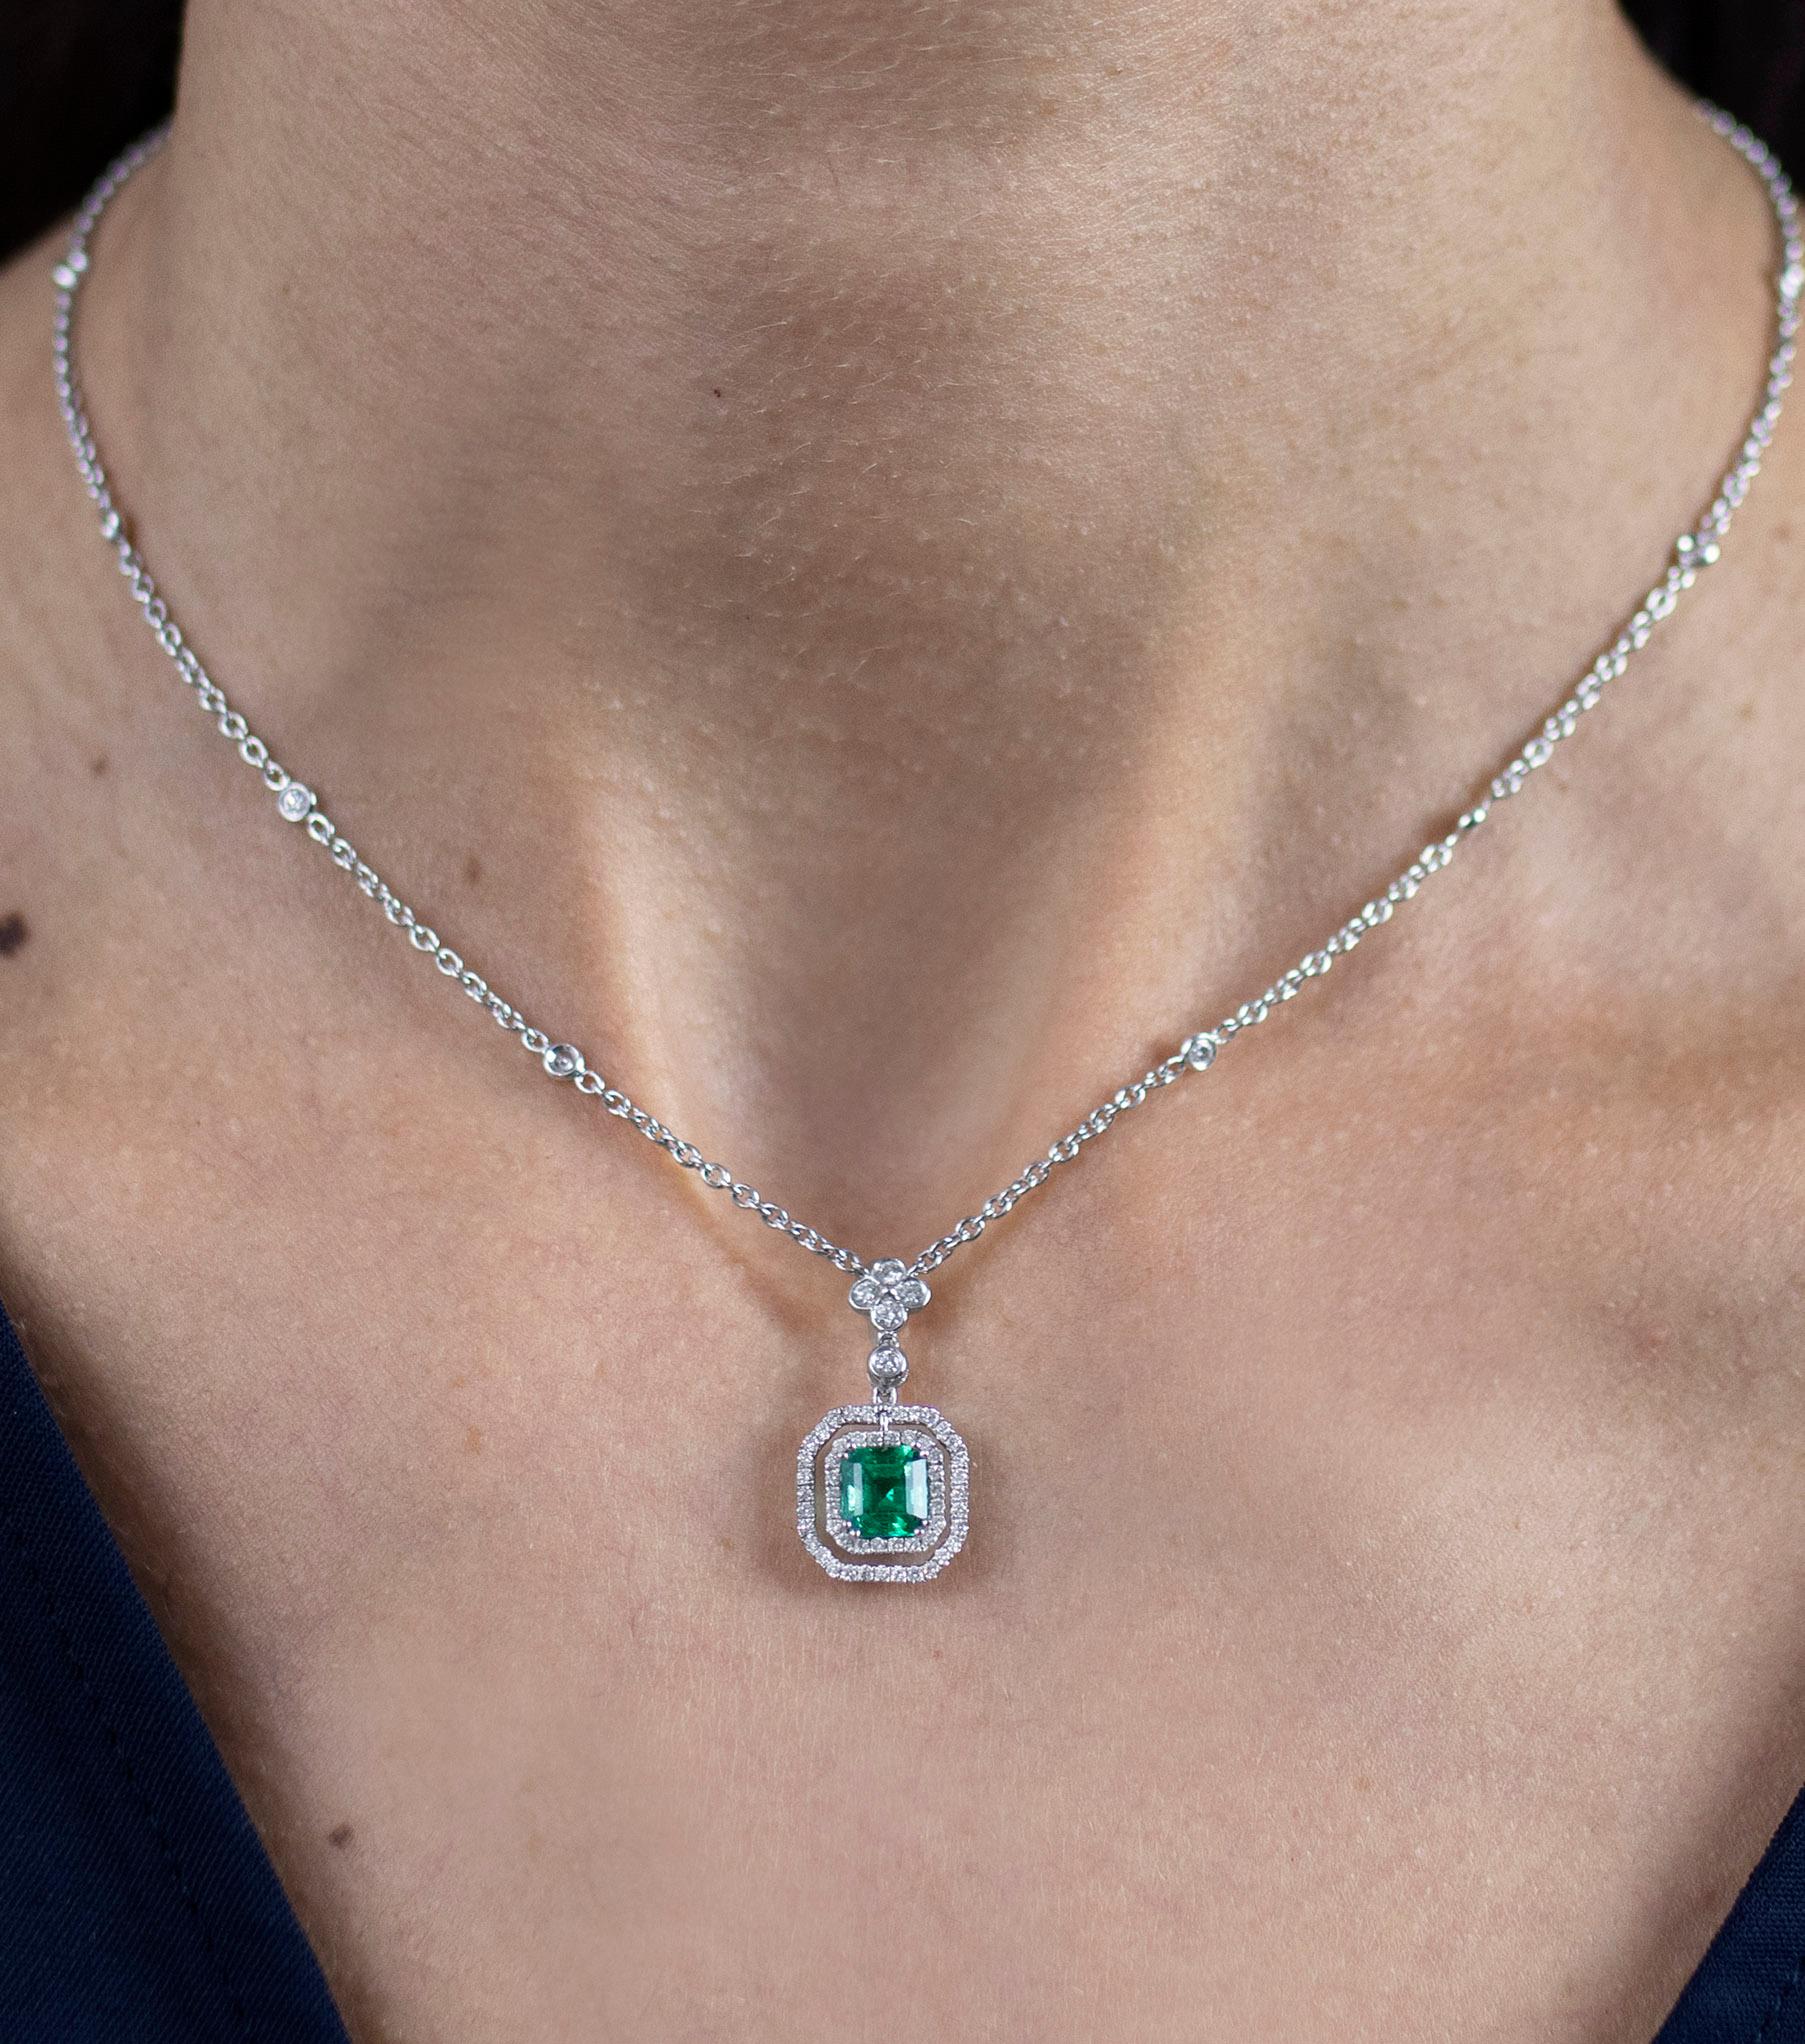 Emerald Cut Roman Malakov 1.18 Carat Emerald with Diamond Double Halo Pendant Necklace For Sale